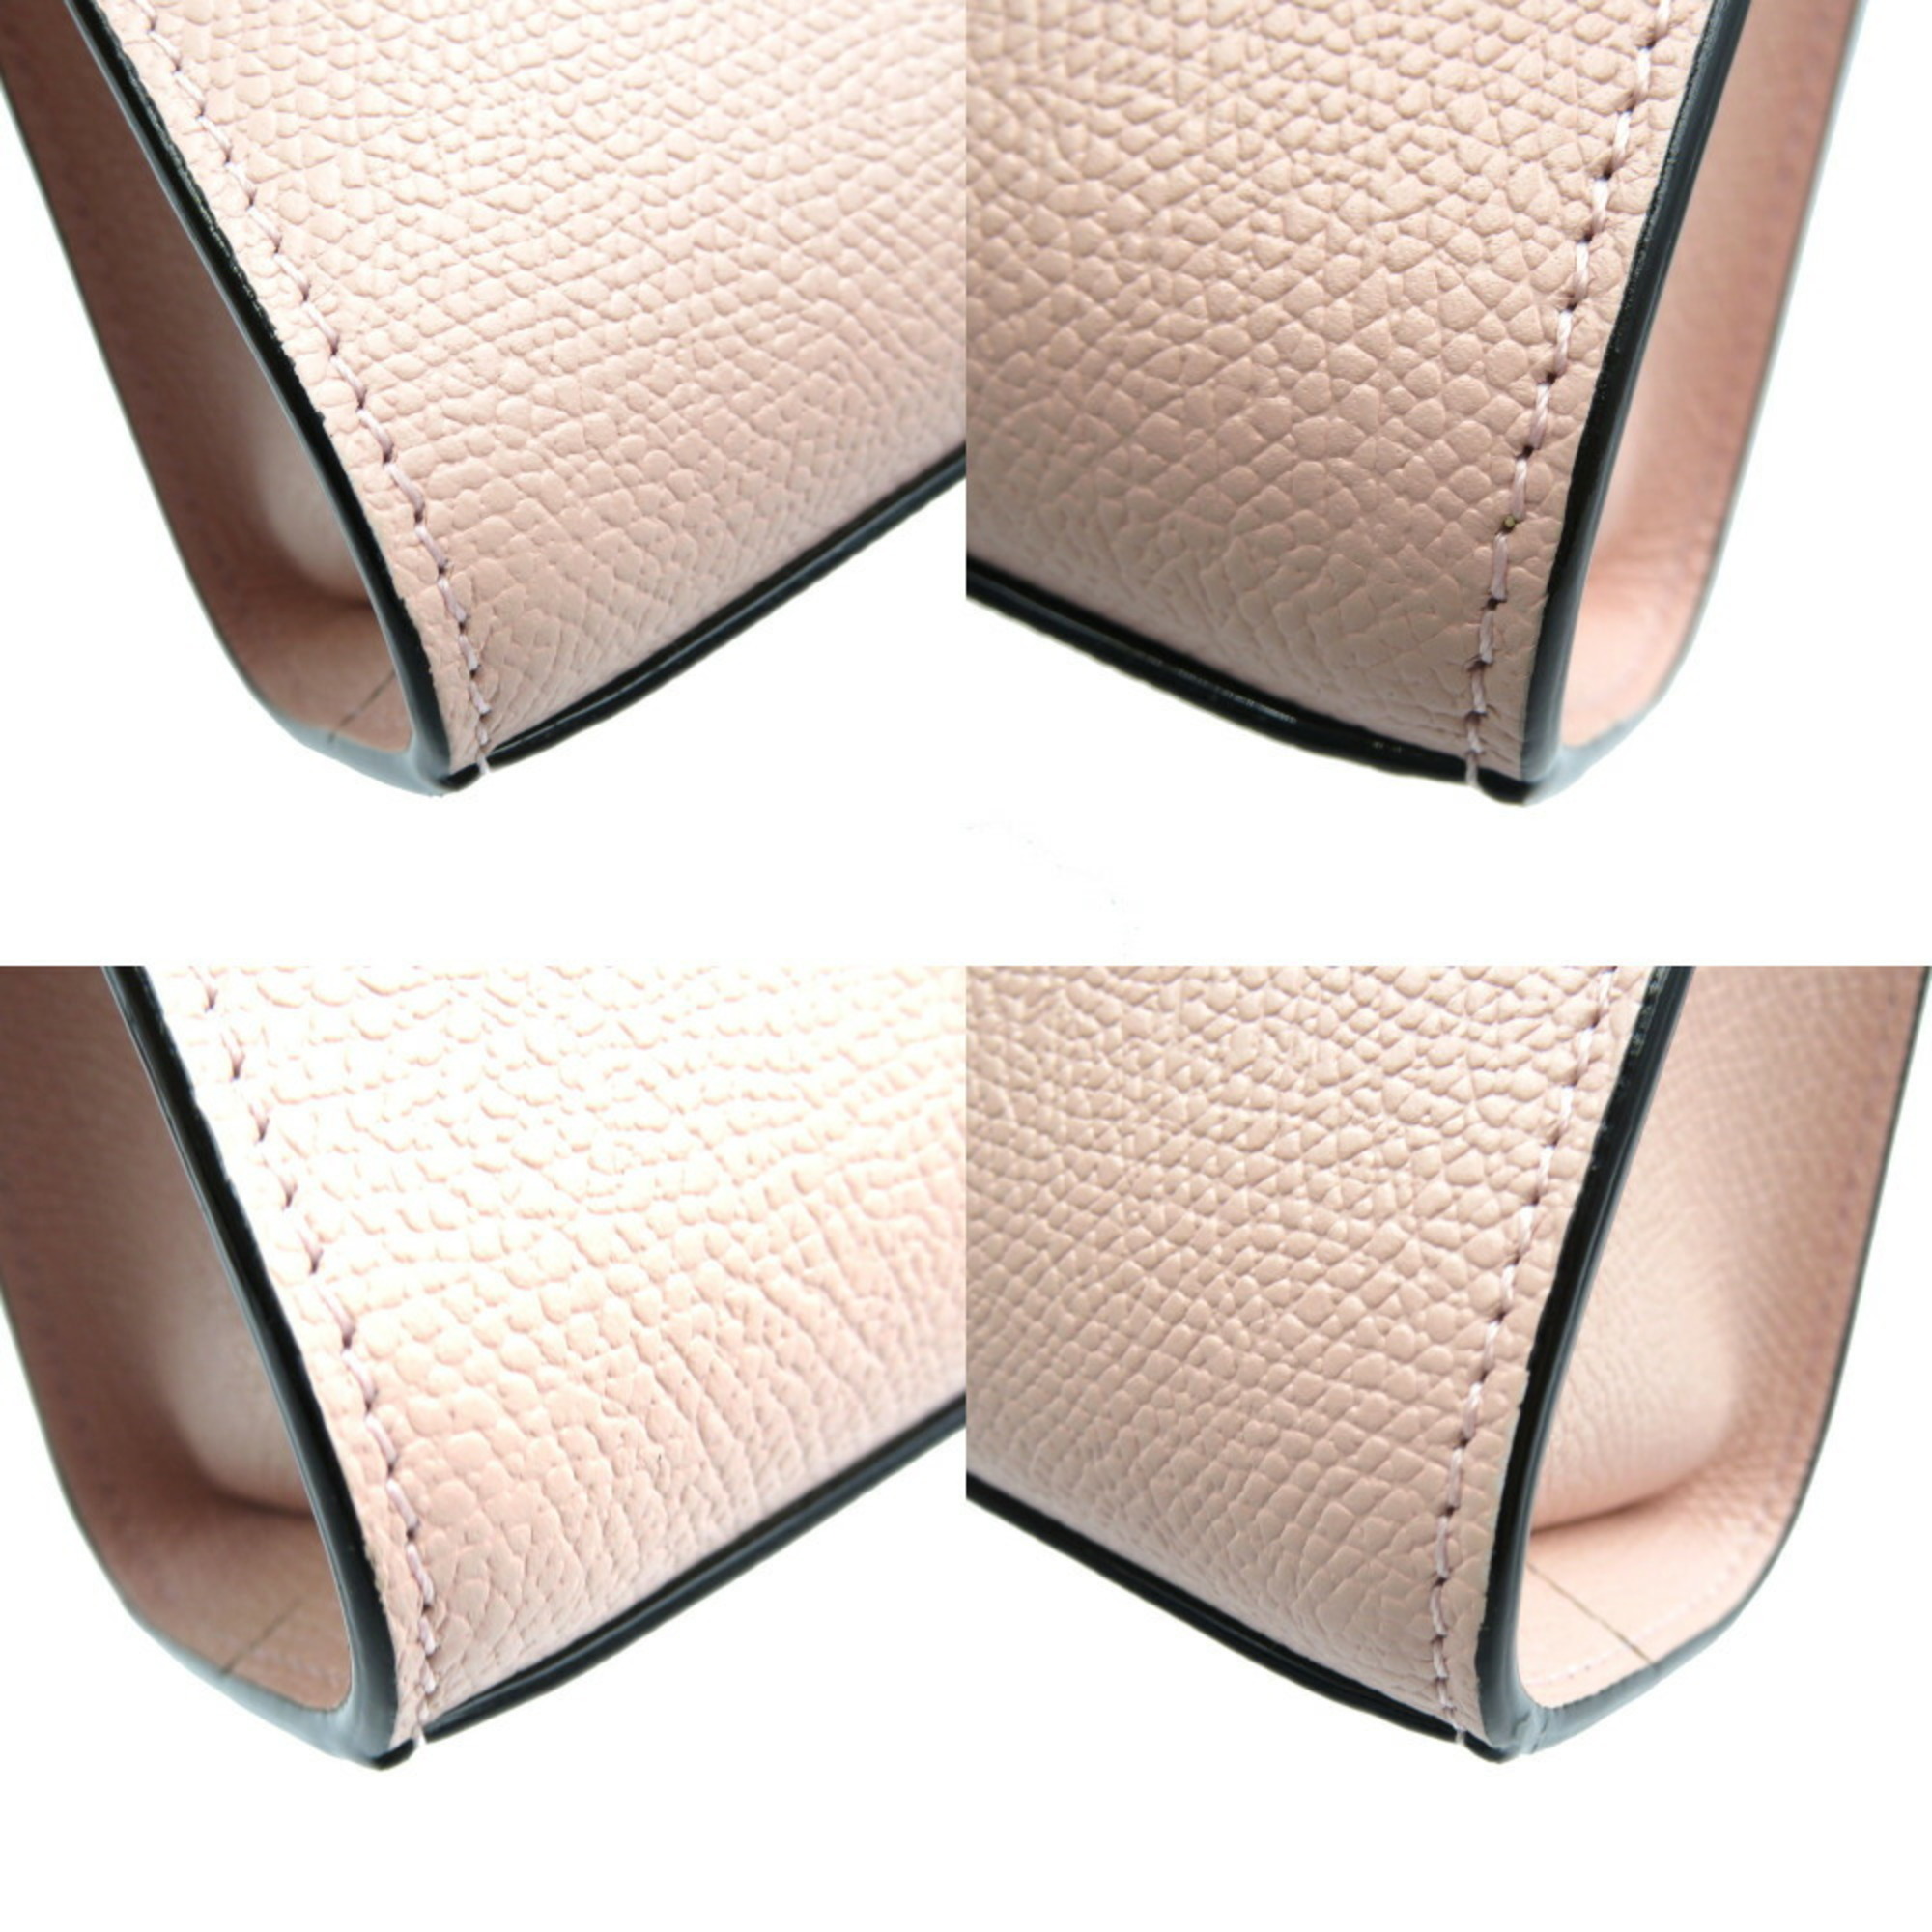 Valextra Iside Belt SGES0061028LOCPL99 Calf Pink Shoulder Bag